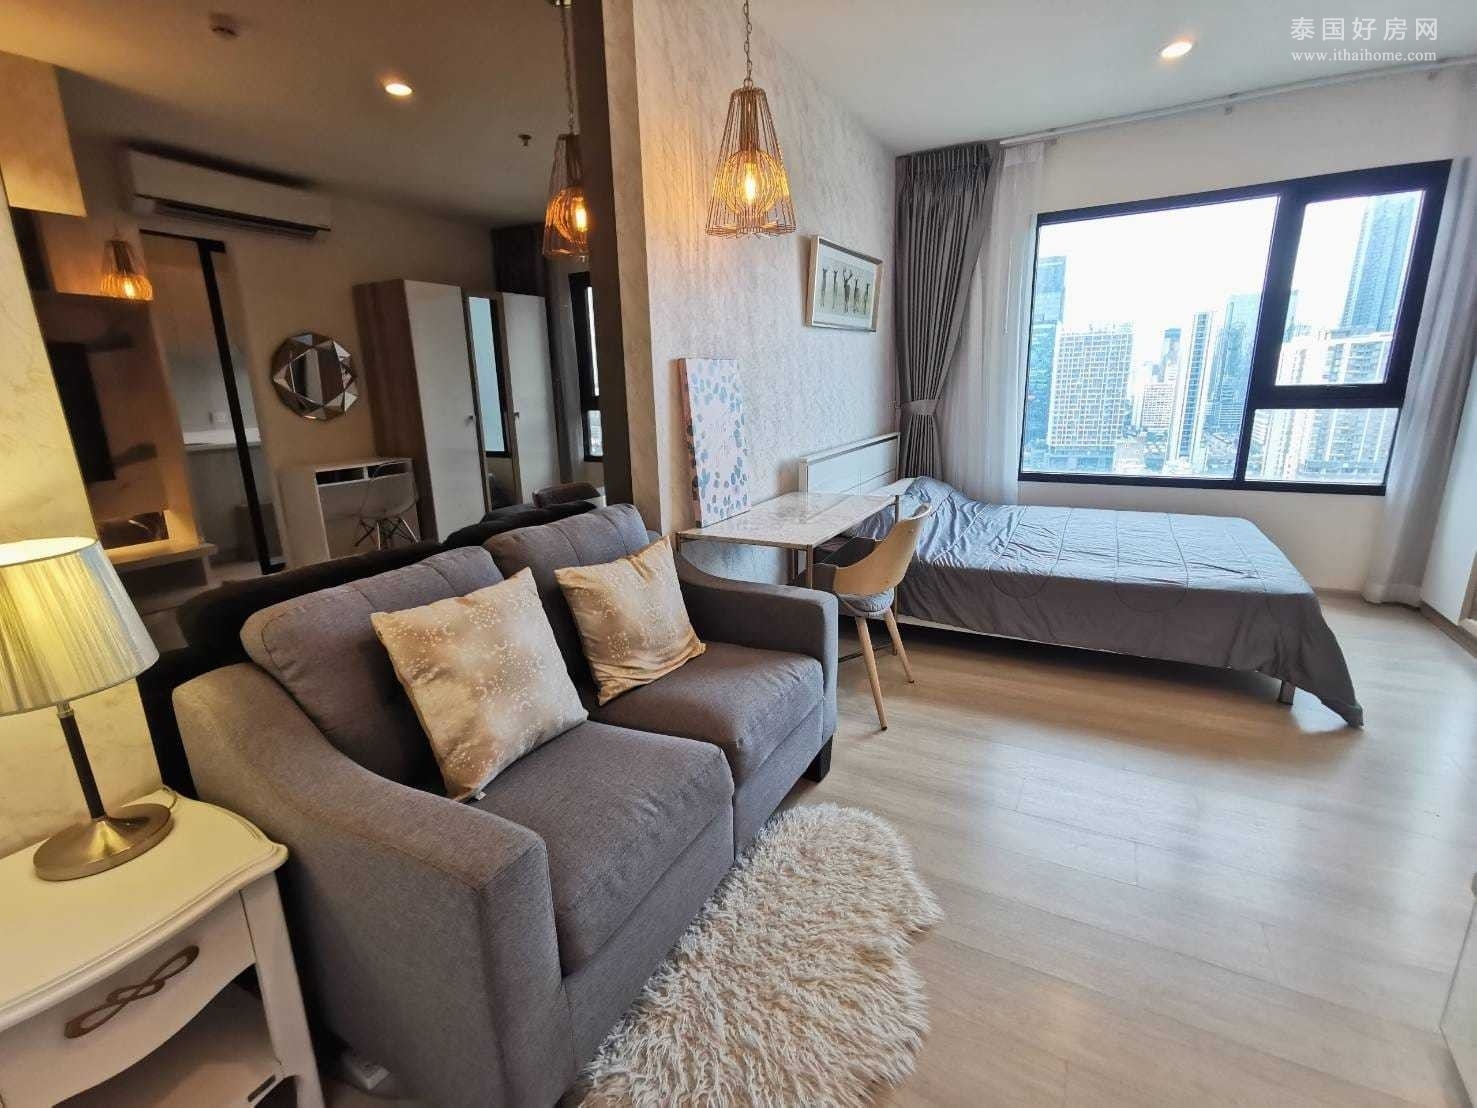 【推荐】Life Asoke 公寓出售 开间24平米 432万泰铢